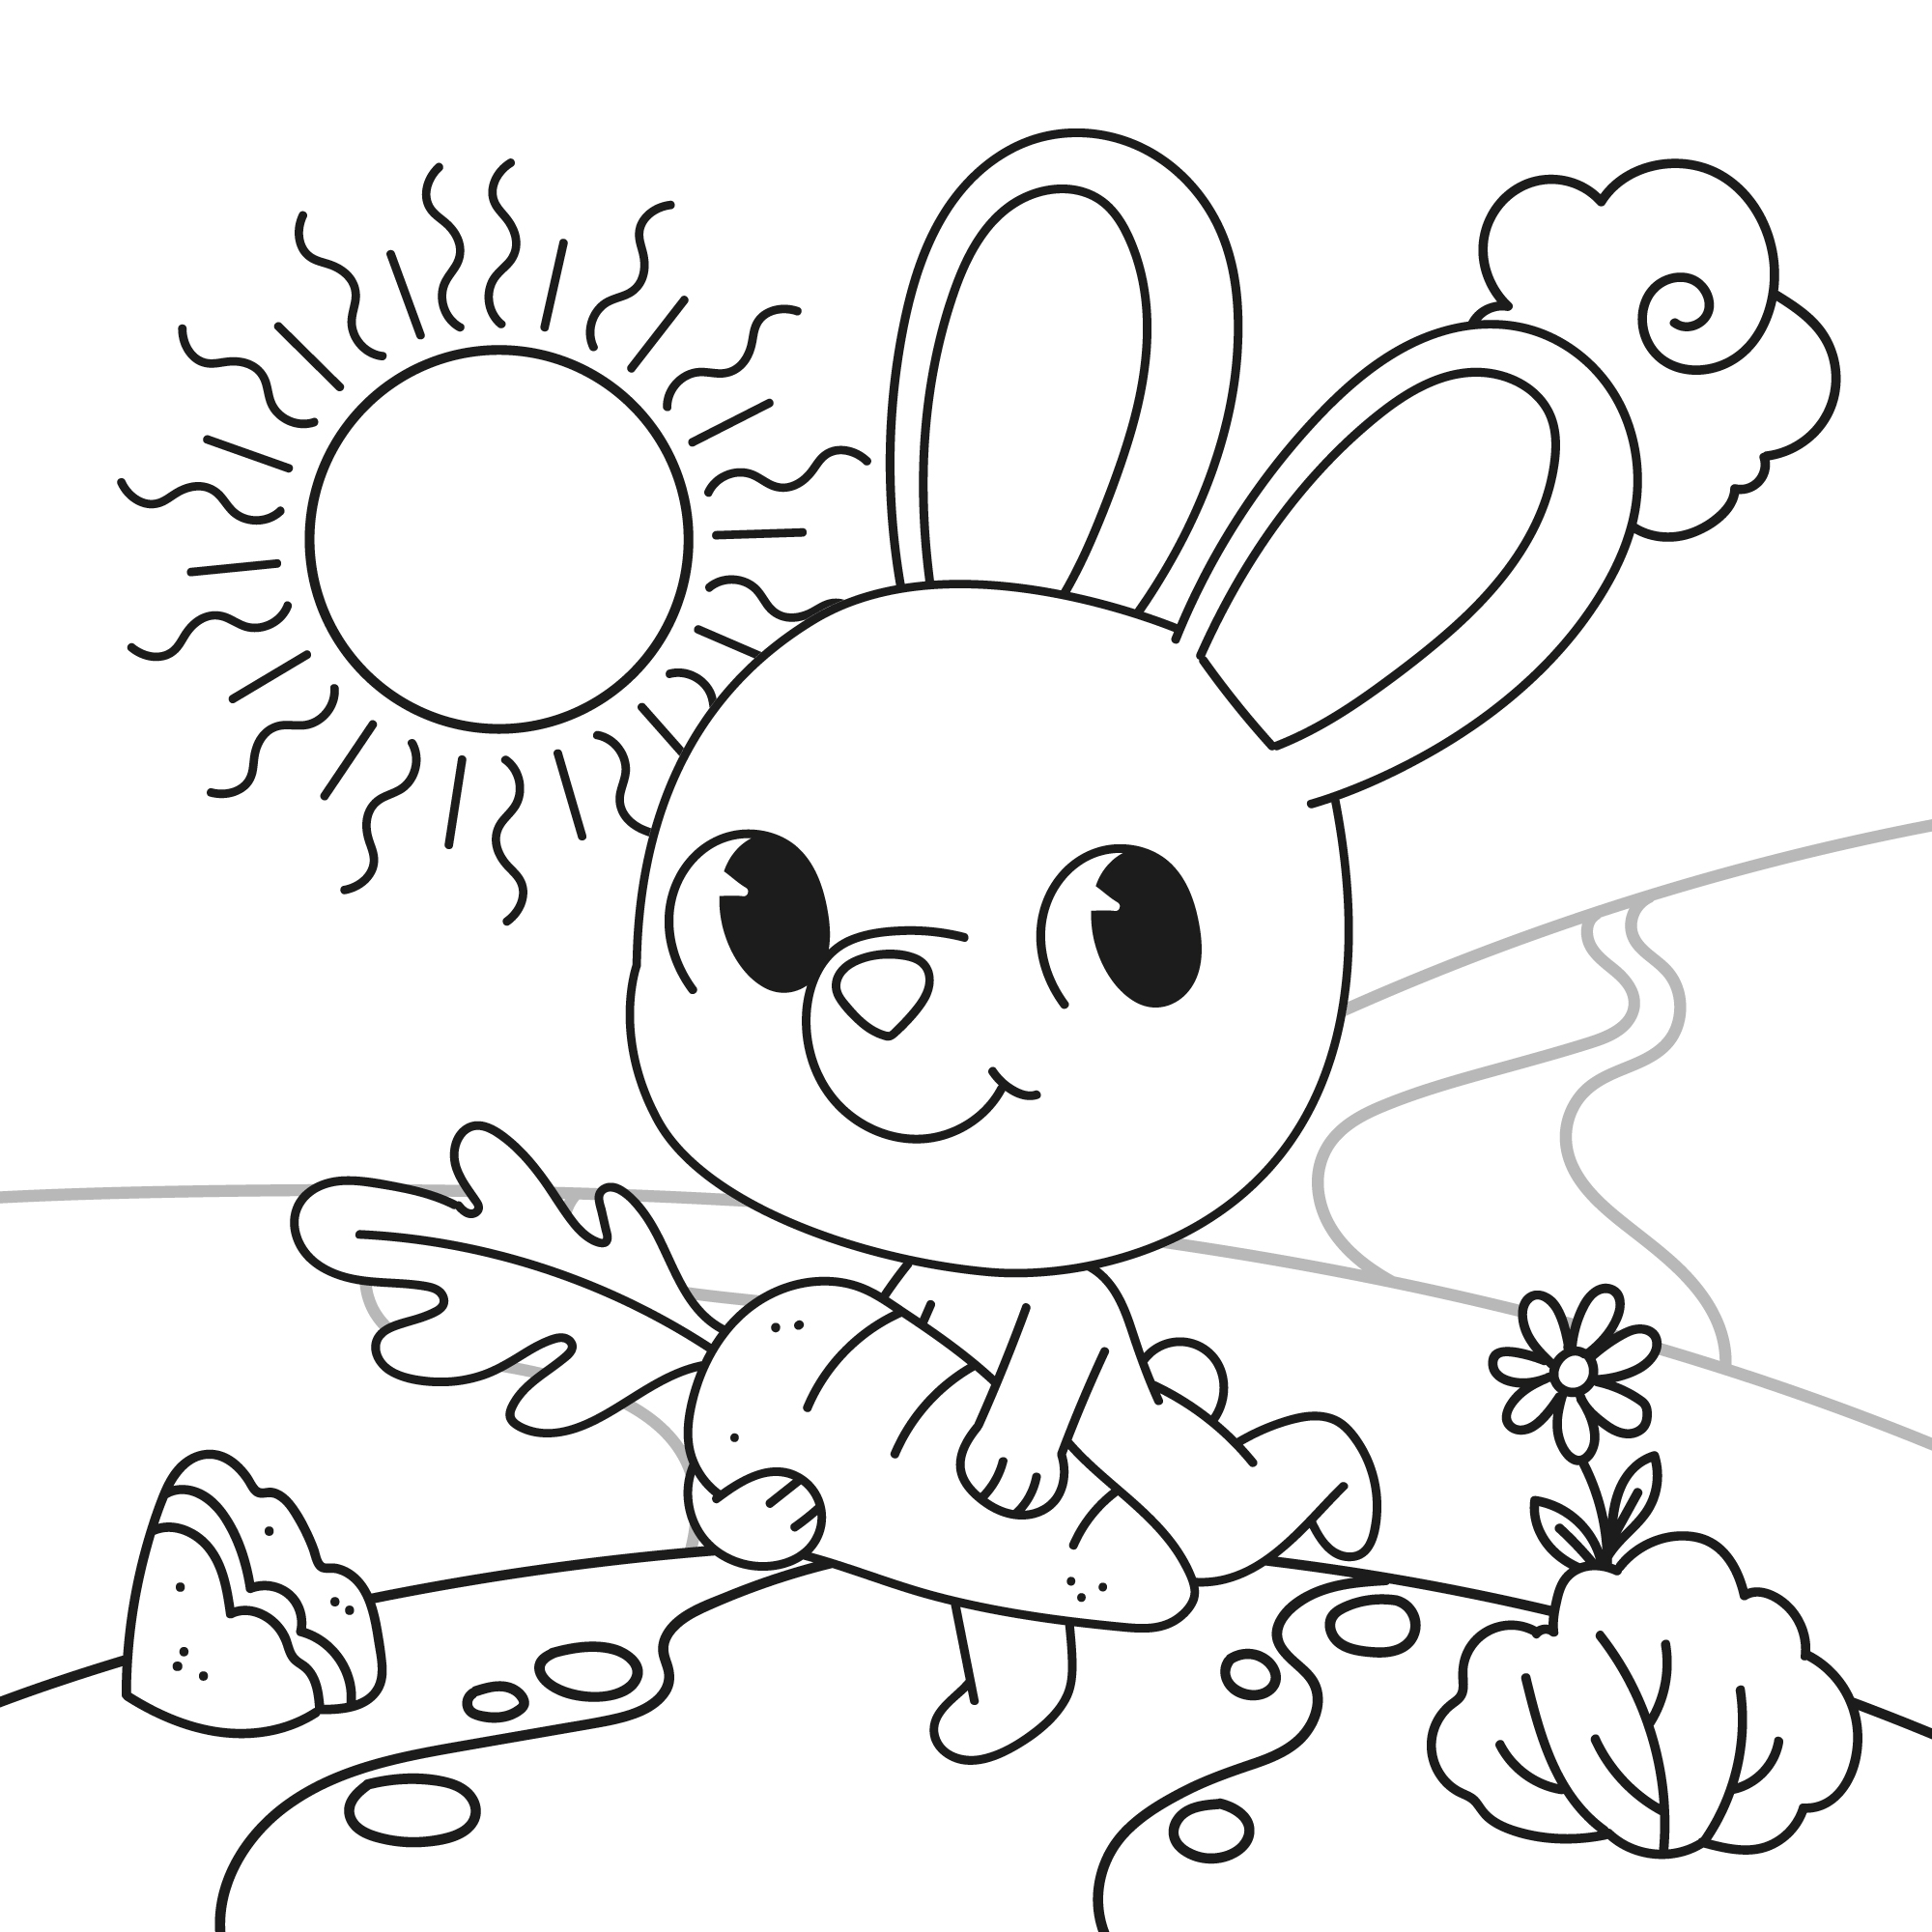 Раскраска игрушечный зайка бежит по поляне с морковкой в лапках формата А4 в высоком качестве